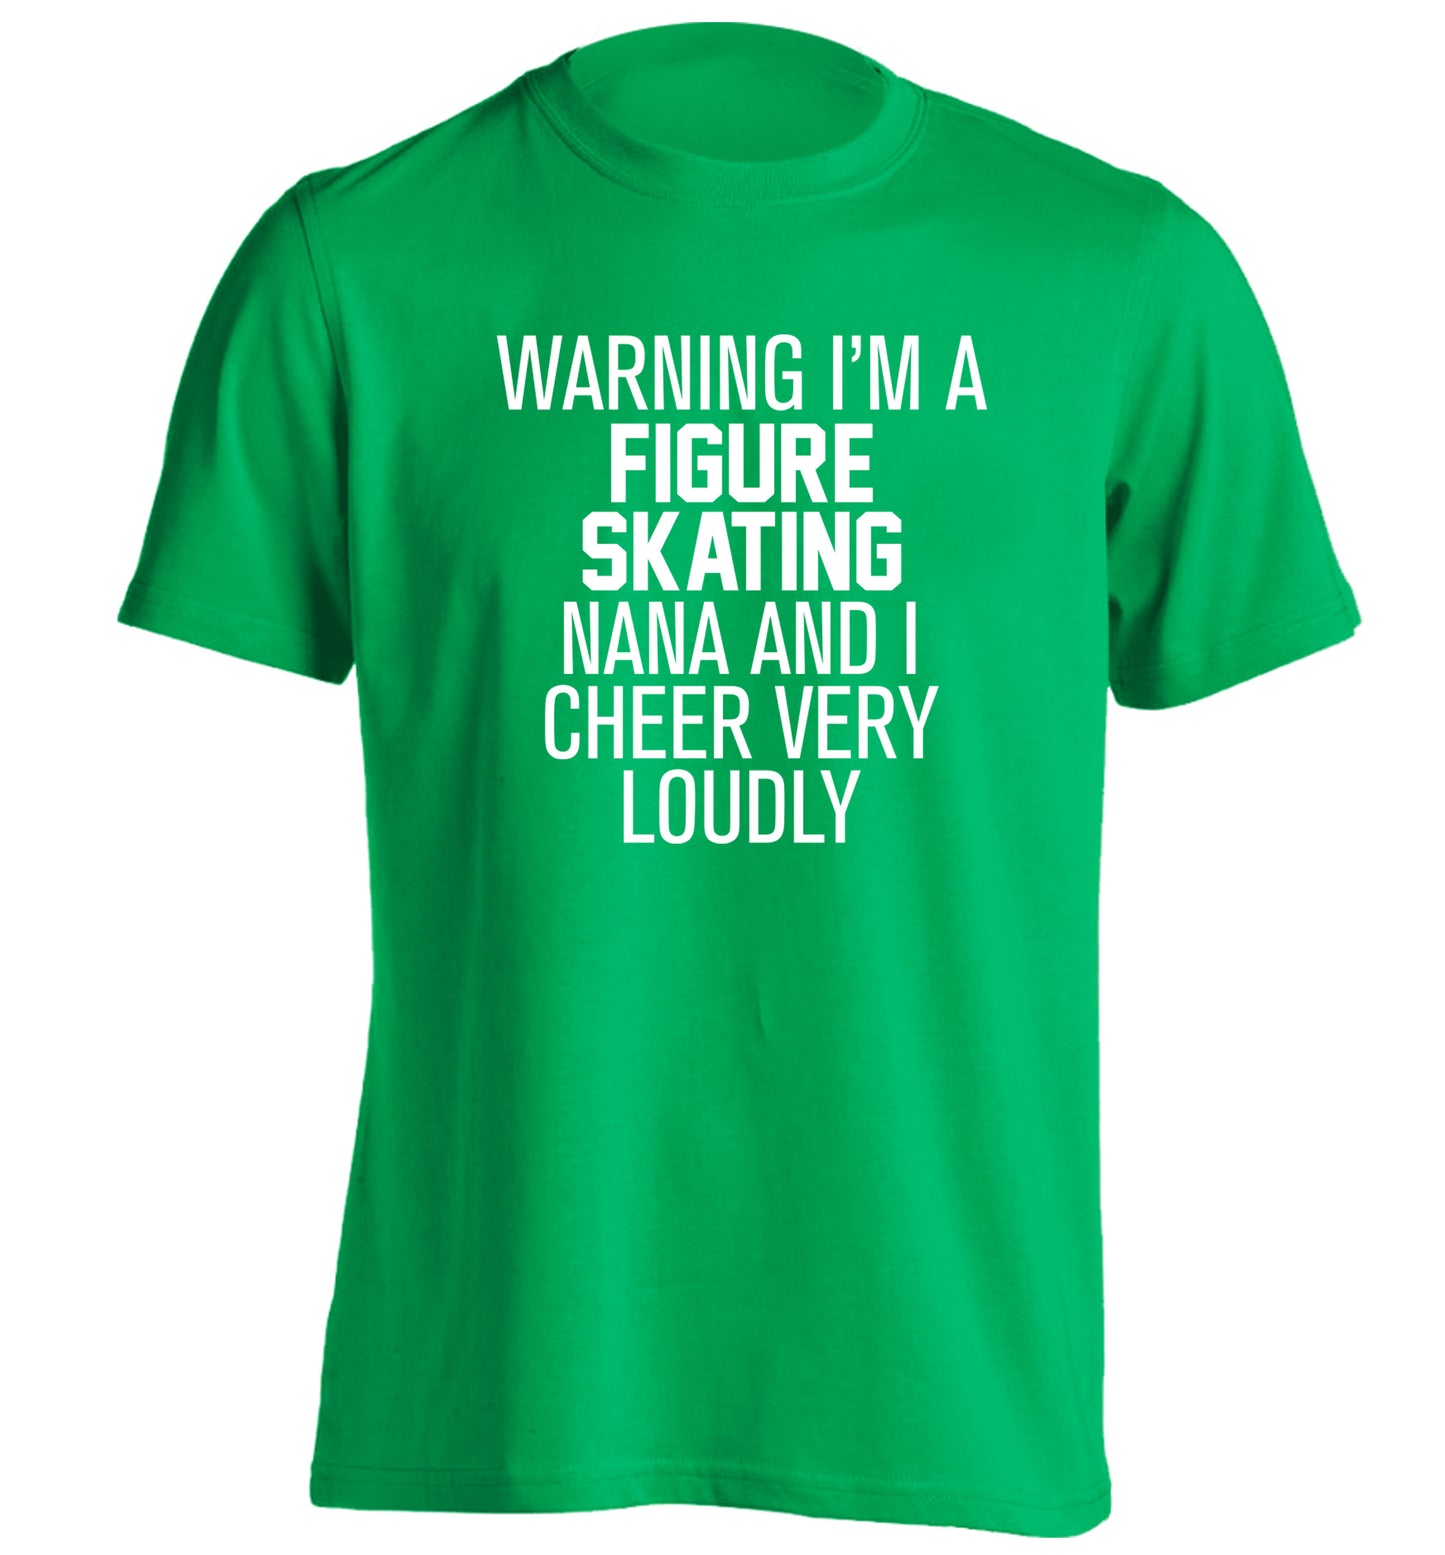 Warning I'm a figure skating nana and I cheer very loudly adults unisexgreen Tshirt 2XL